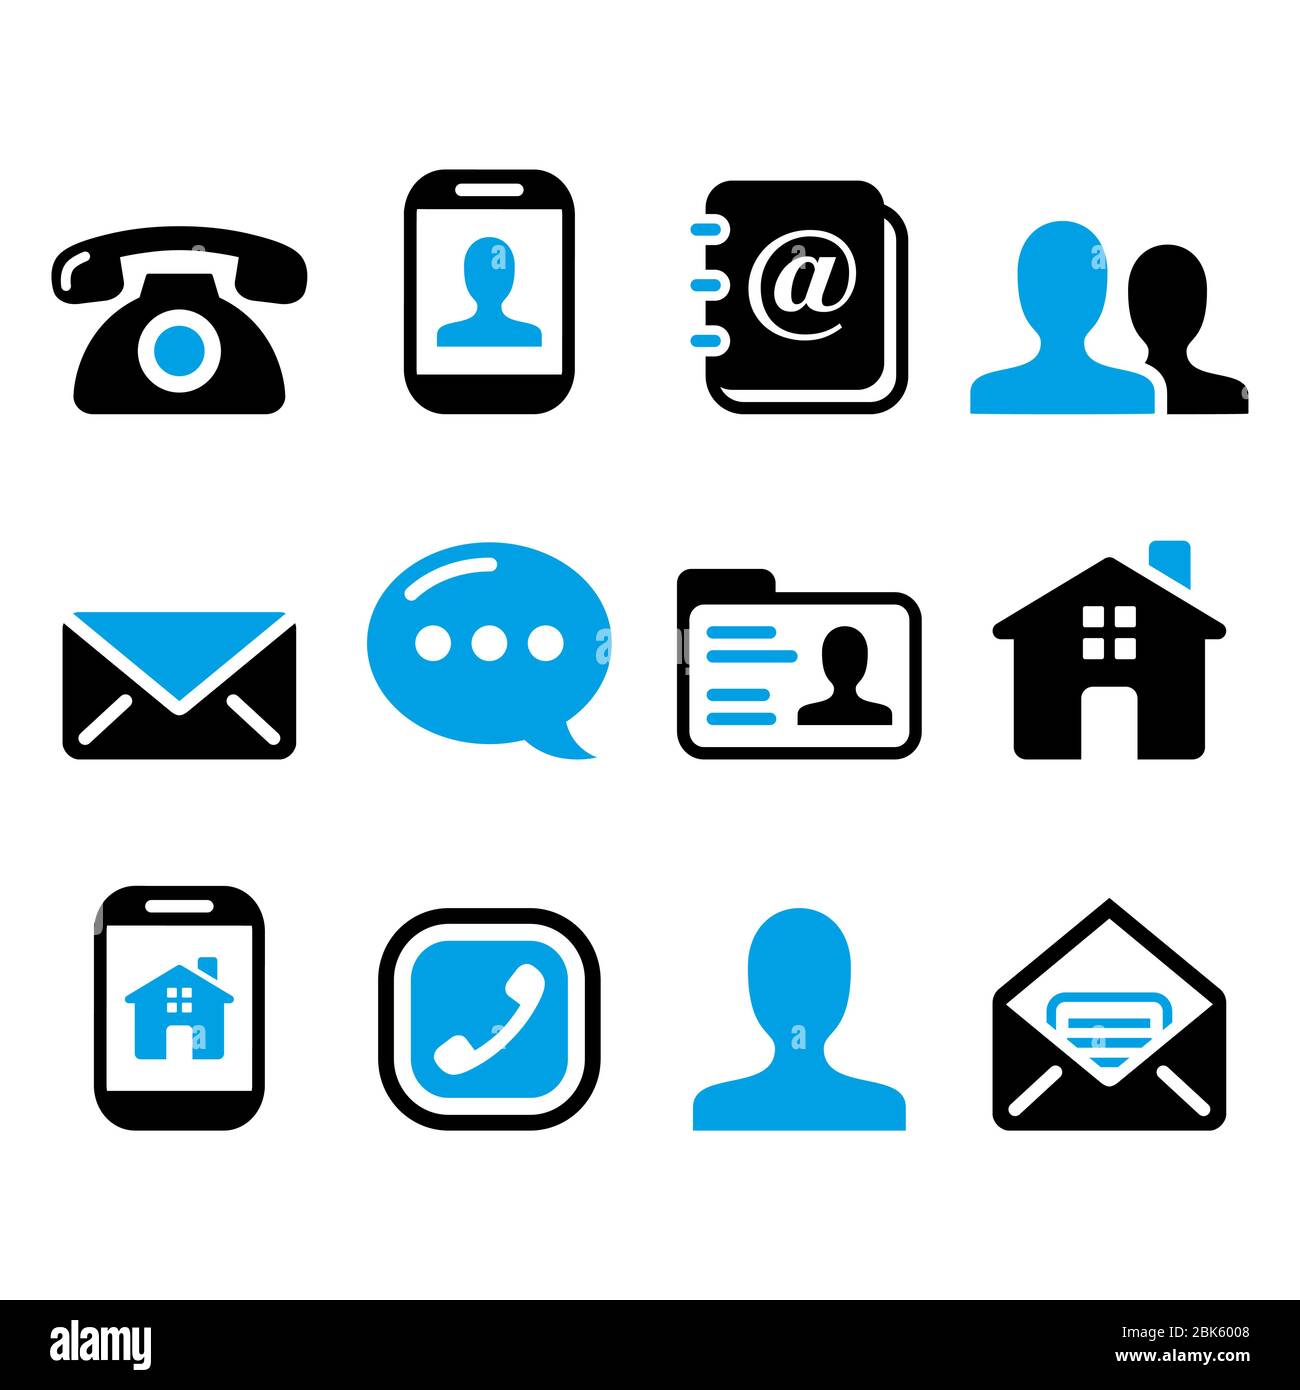 Kontakt Vektor-Symbole Set - Handy, Benutzer, E-Mail, Smartphone, Telefon Design Sammlung Stock Vektor